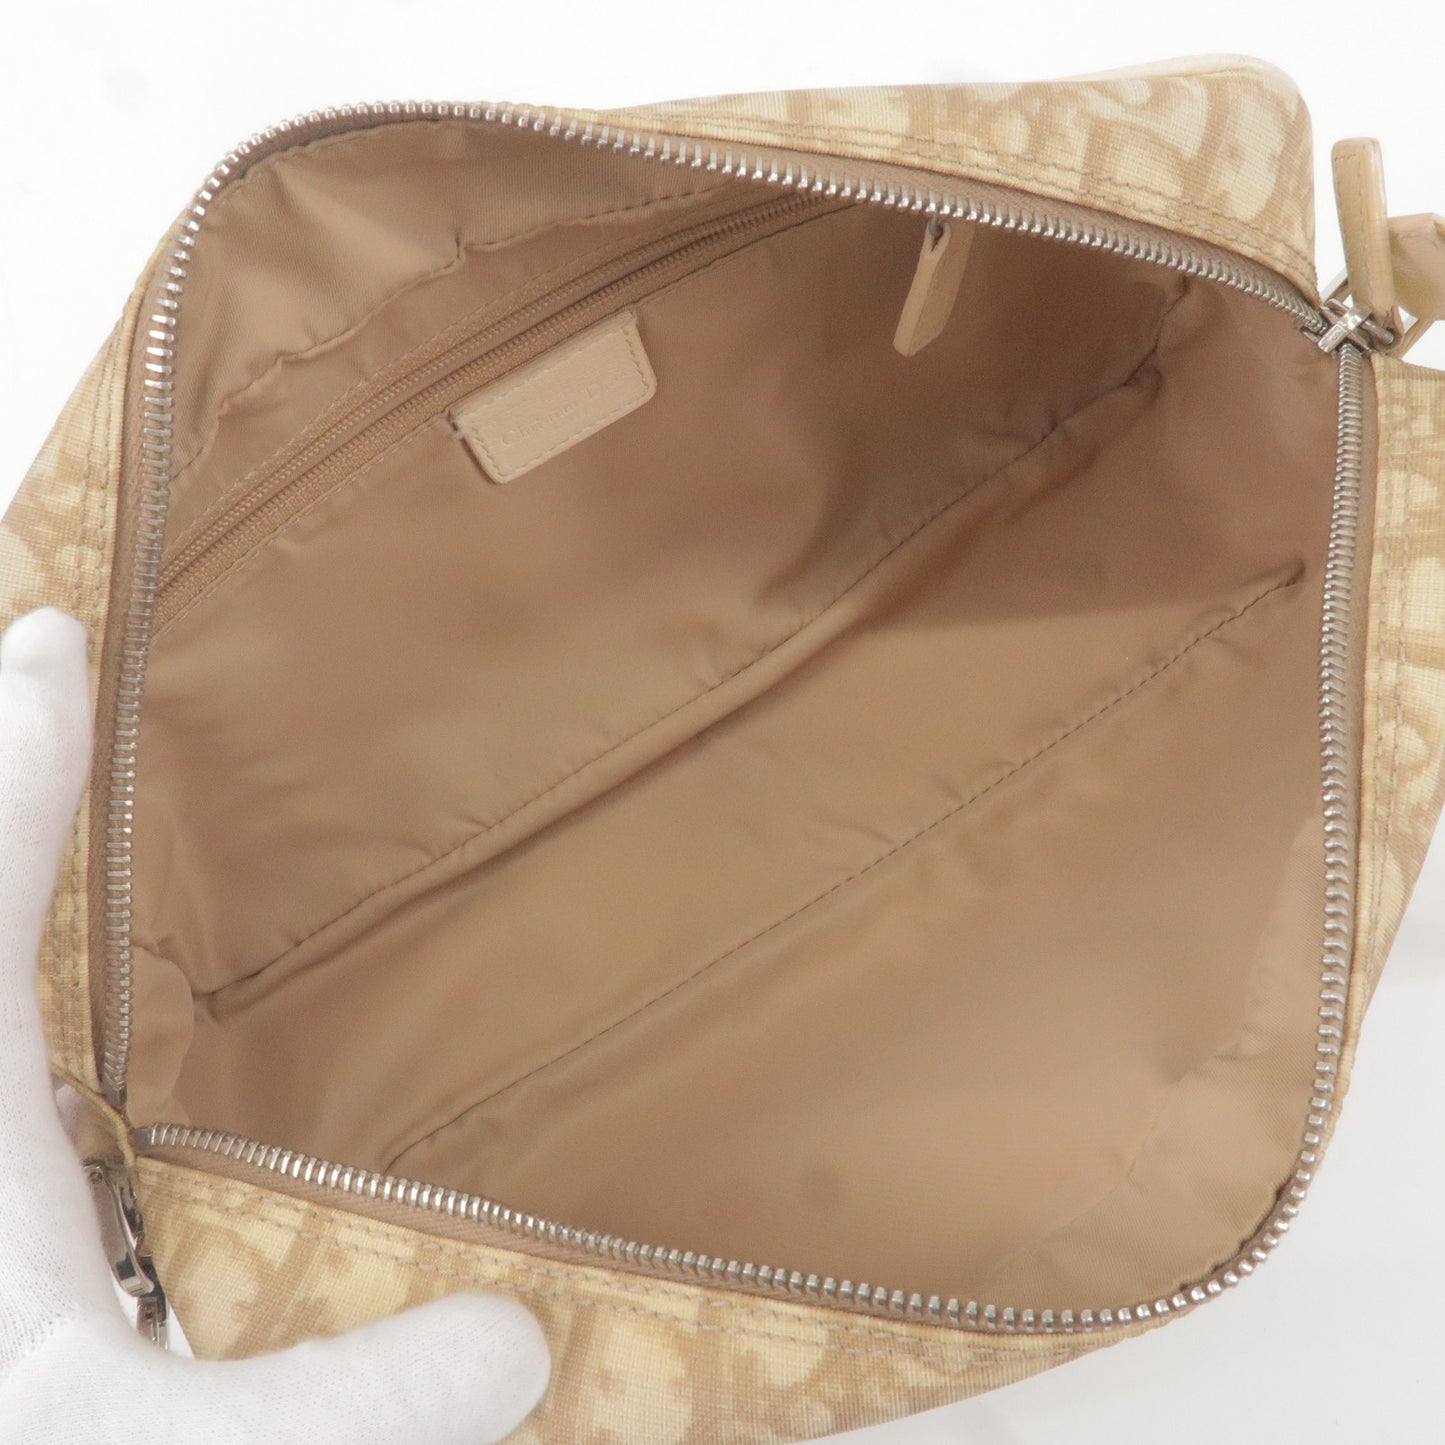 Christian Dior Trotter PVC Leather Embroidered Shoulder Bag